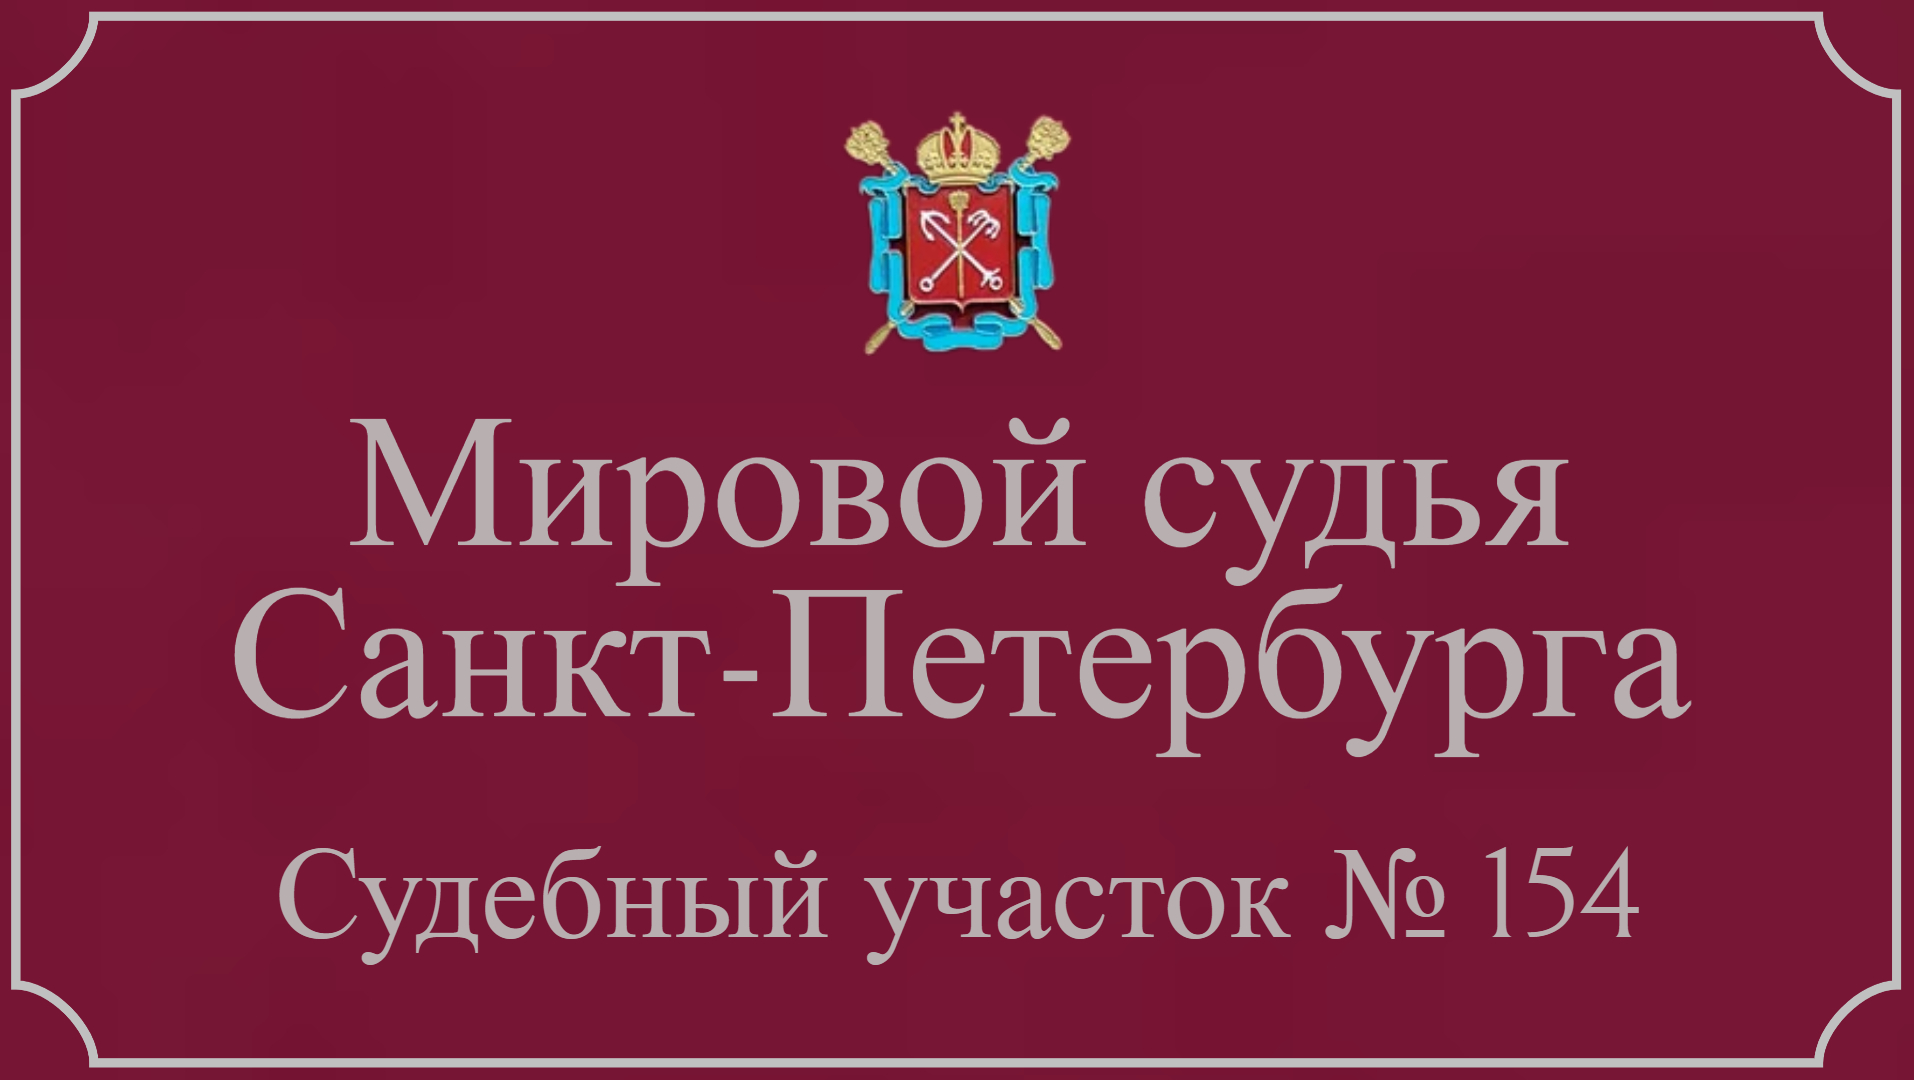 Информация по 154 судебному участку в Санкт-Петербурге.